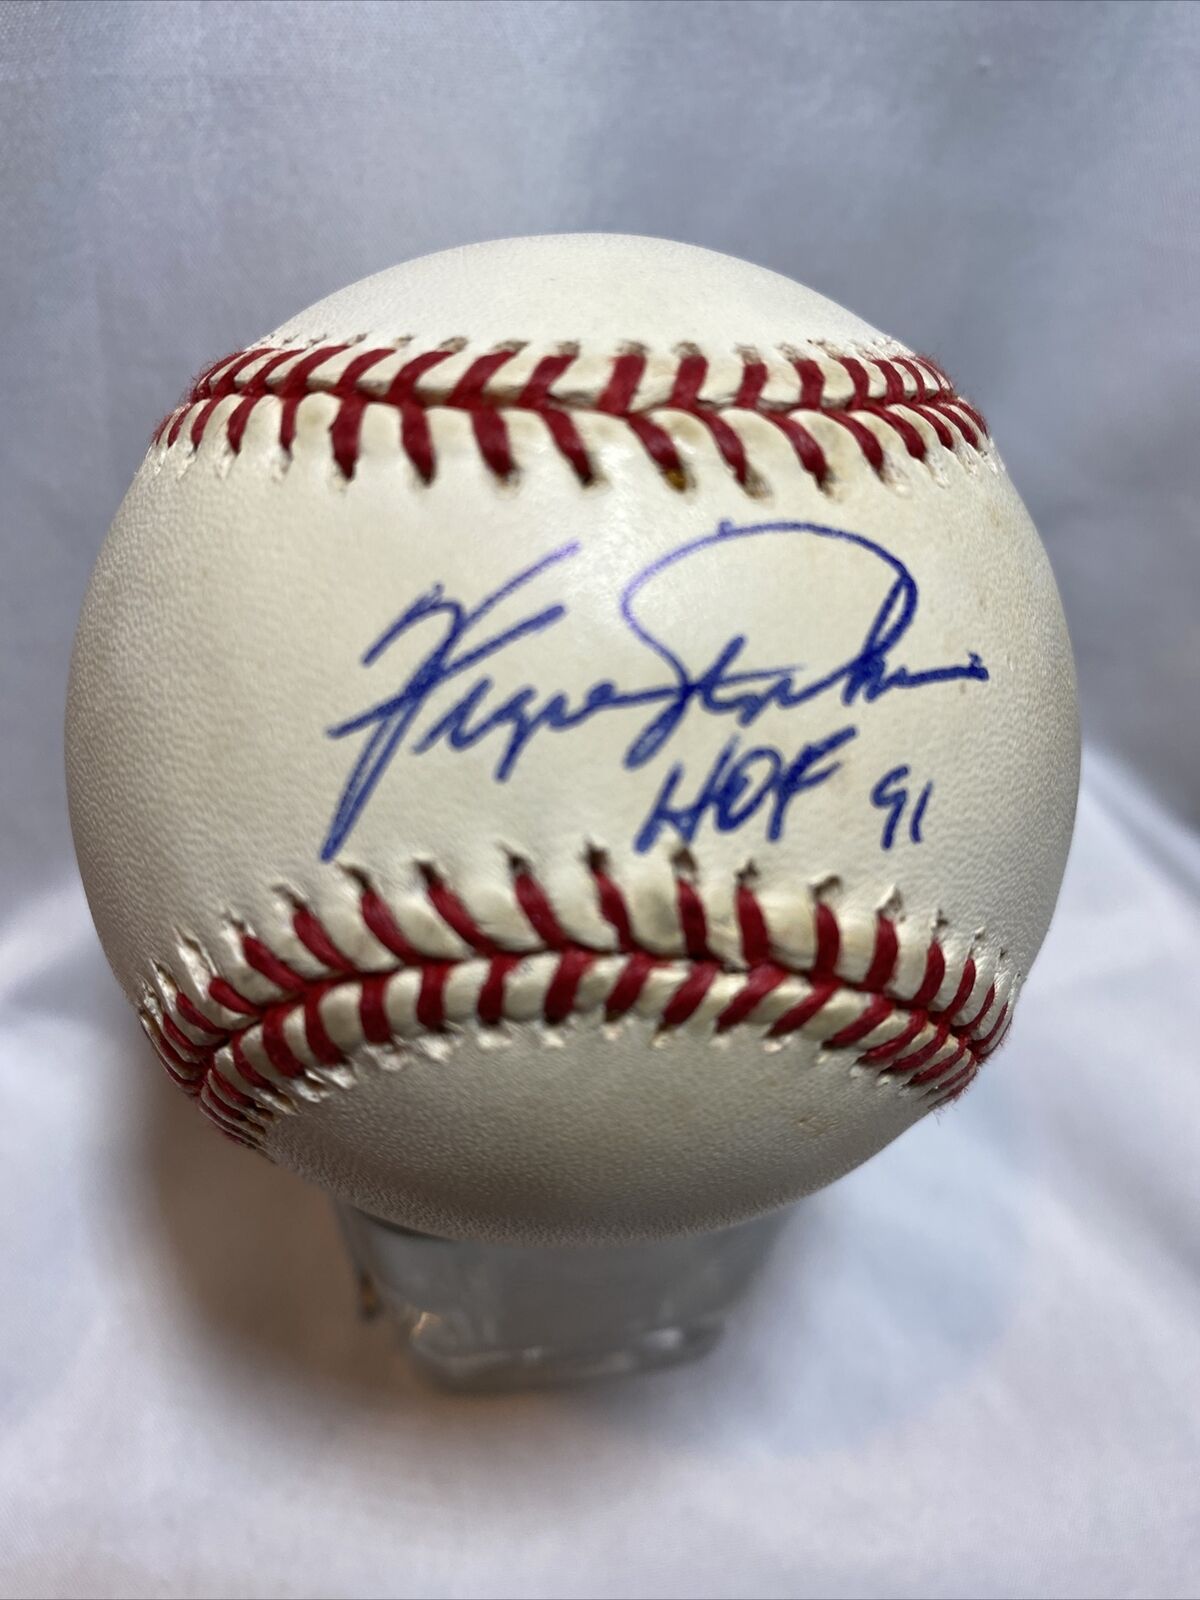 Ferguson Jenkins HOF 91 Chicago Cubs Baseball Autographed With COA